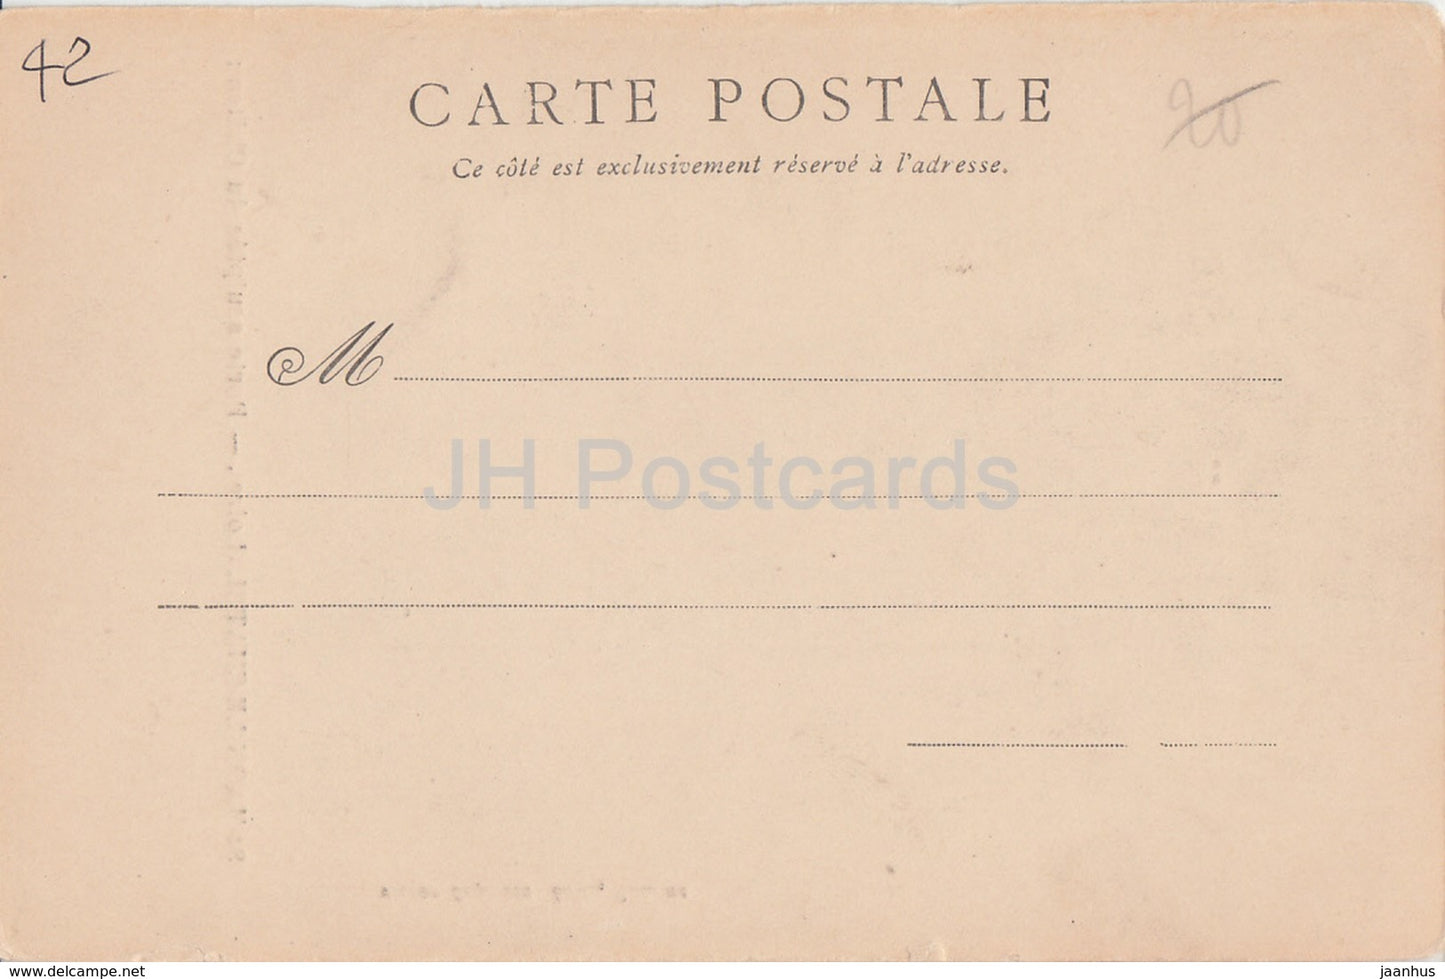 St Haon Le Chatel - Porte sculptee du Chateau - castle - old postcard - France - unused